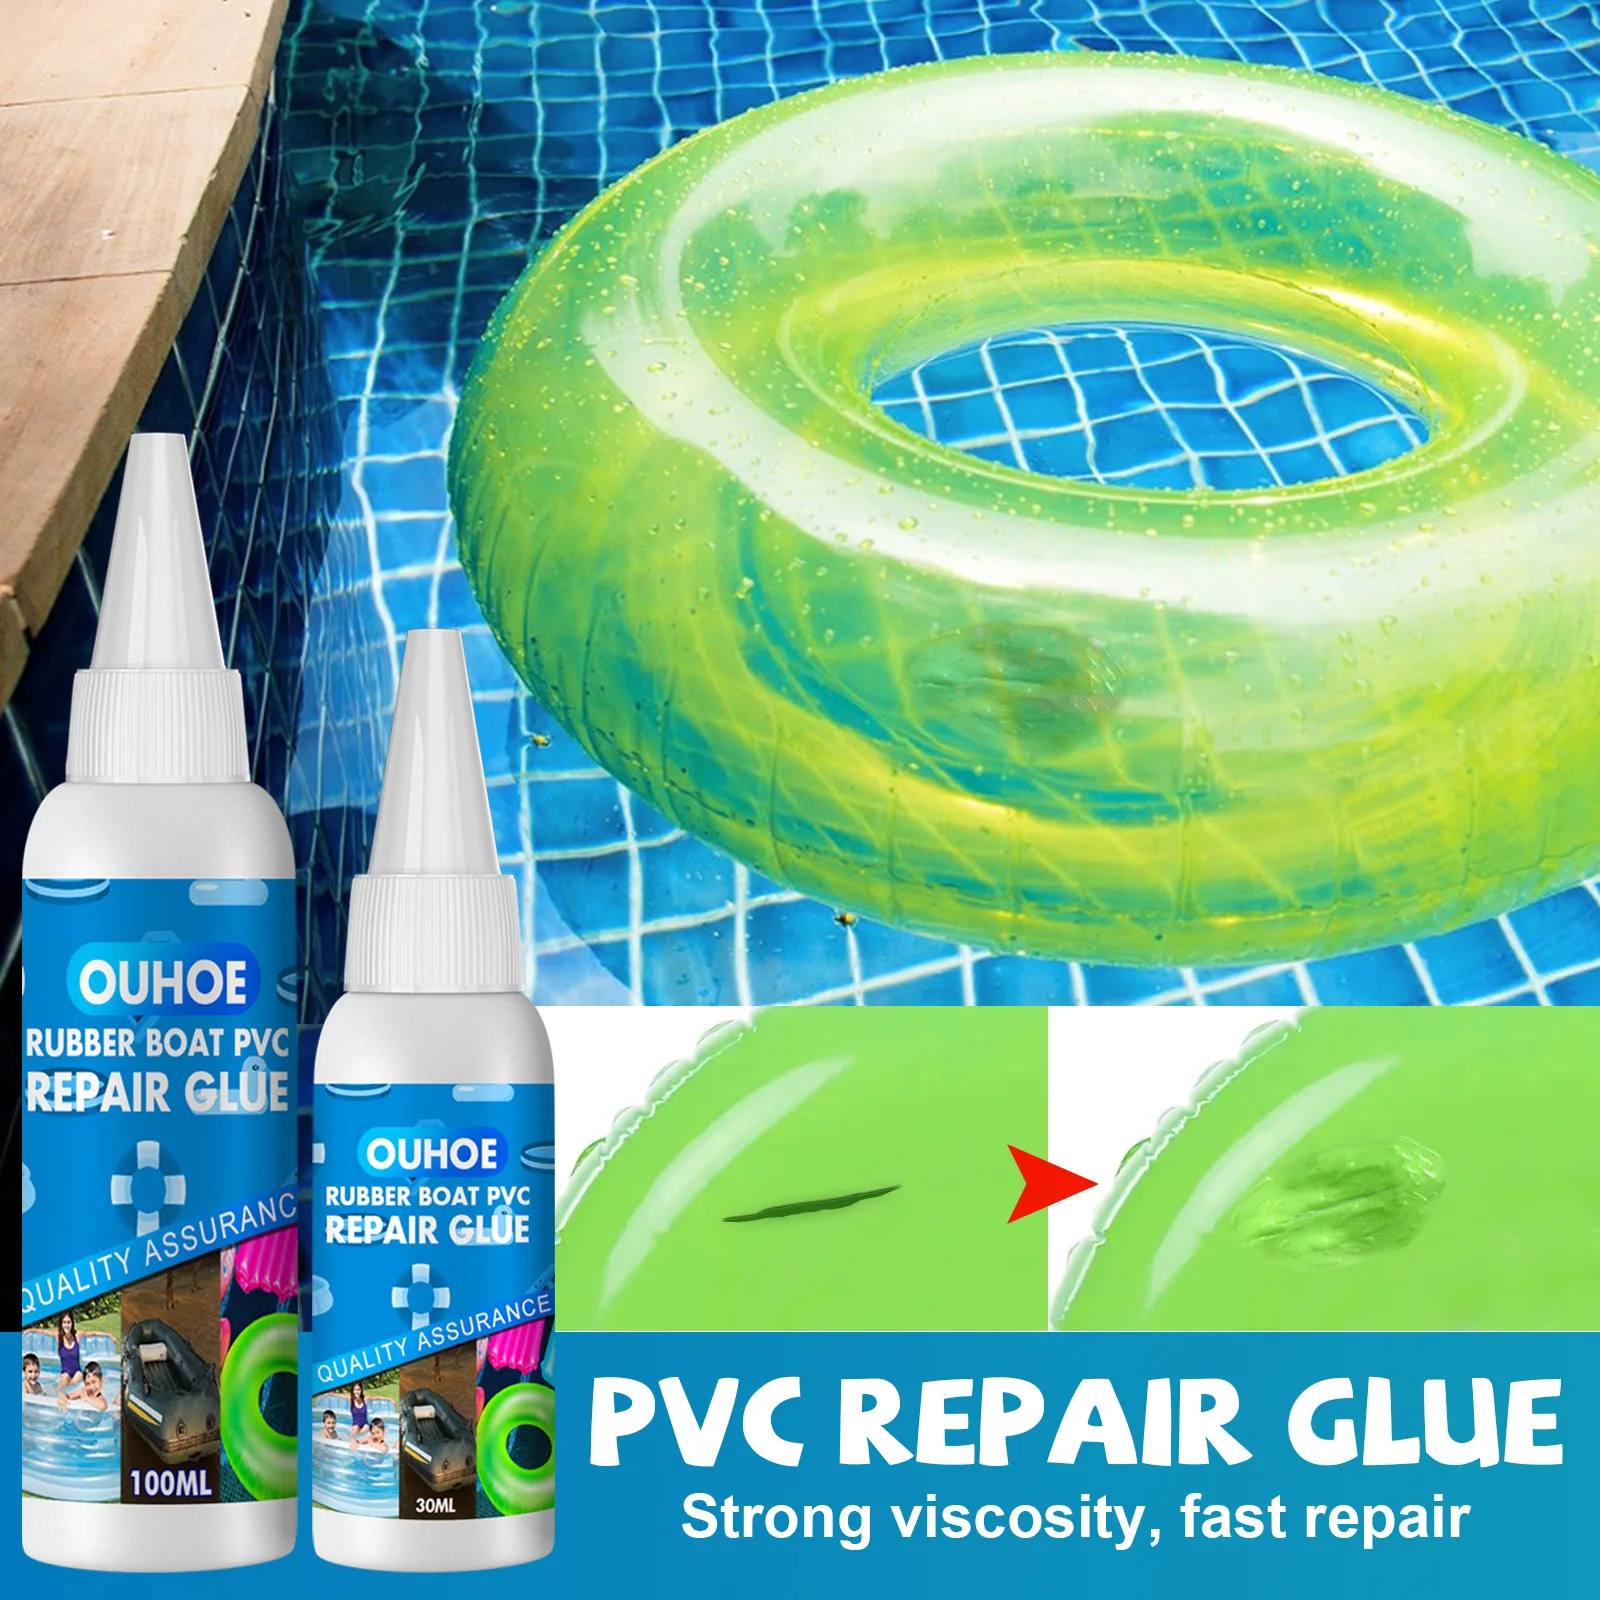 Swimming Ring Repair Glue Waterproof Adhesive Sealant Inflatable Boat Repair Kit Pvc Adhesive Waterbed Air Mattress Toy Home